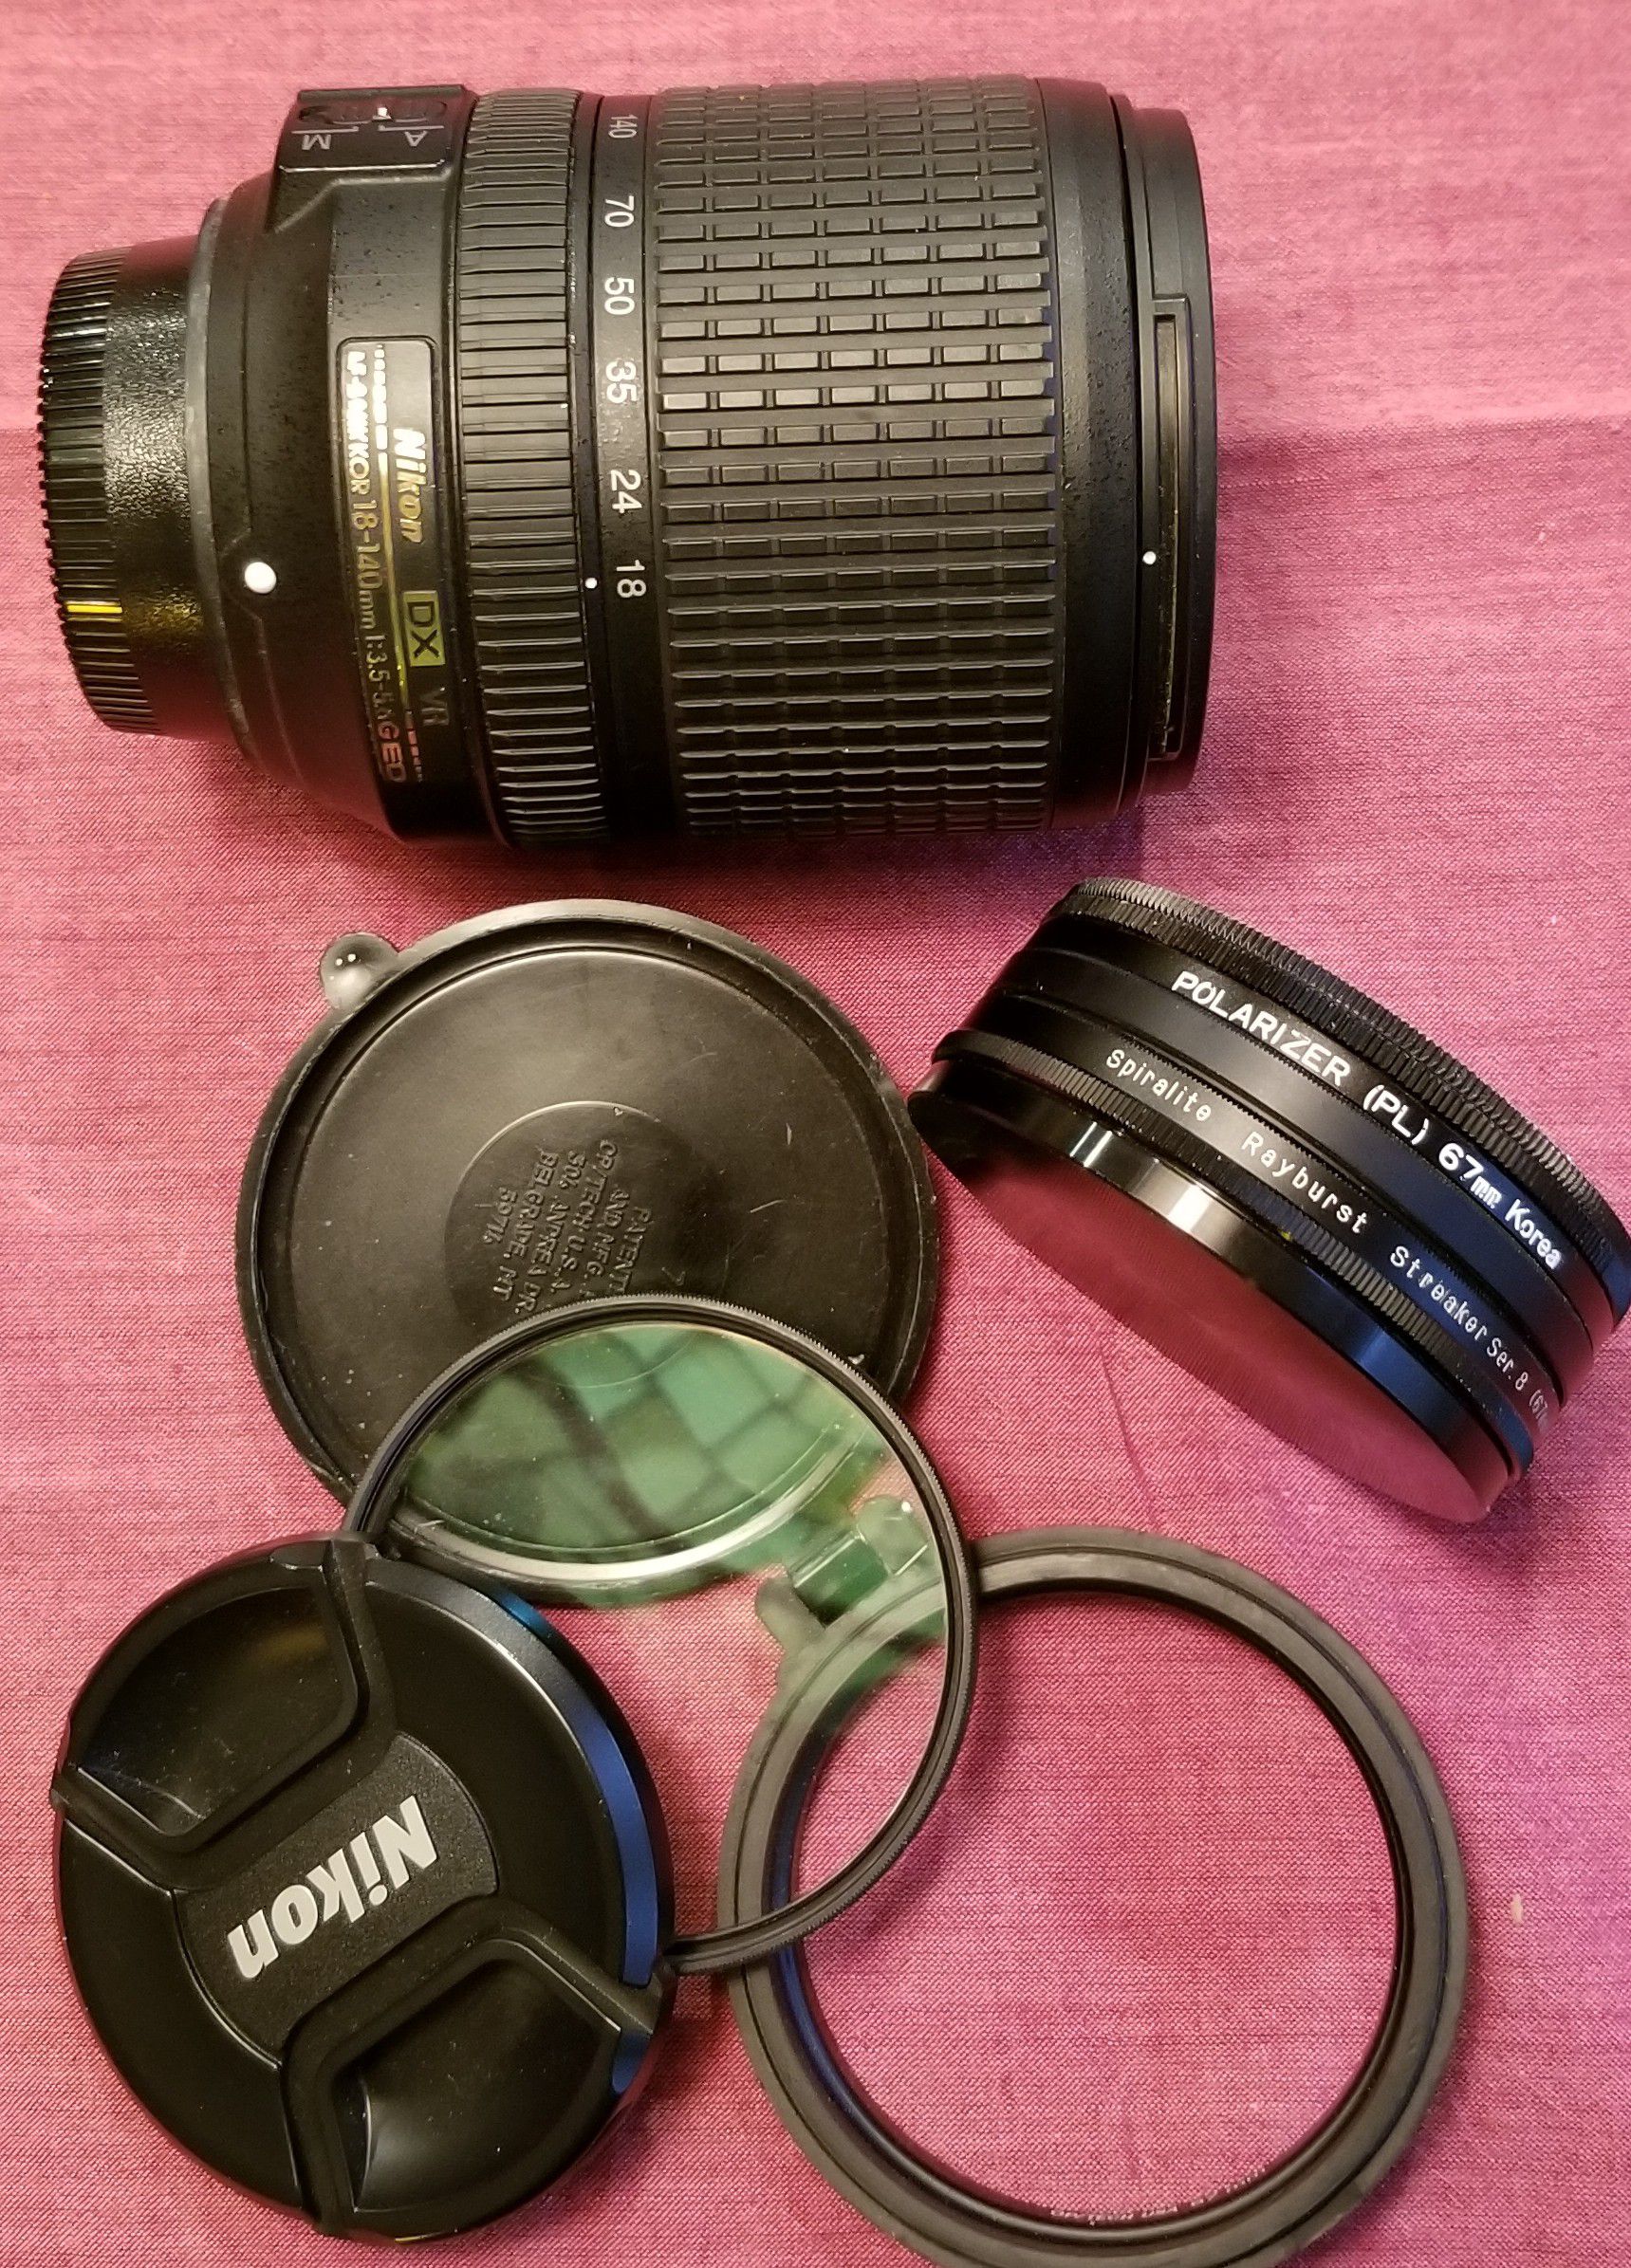 Nikon AF-S NIKKOR 18-140 f/3.5-5.6G ED VR DX lense with accessories